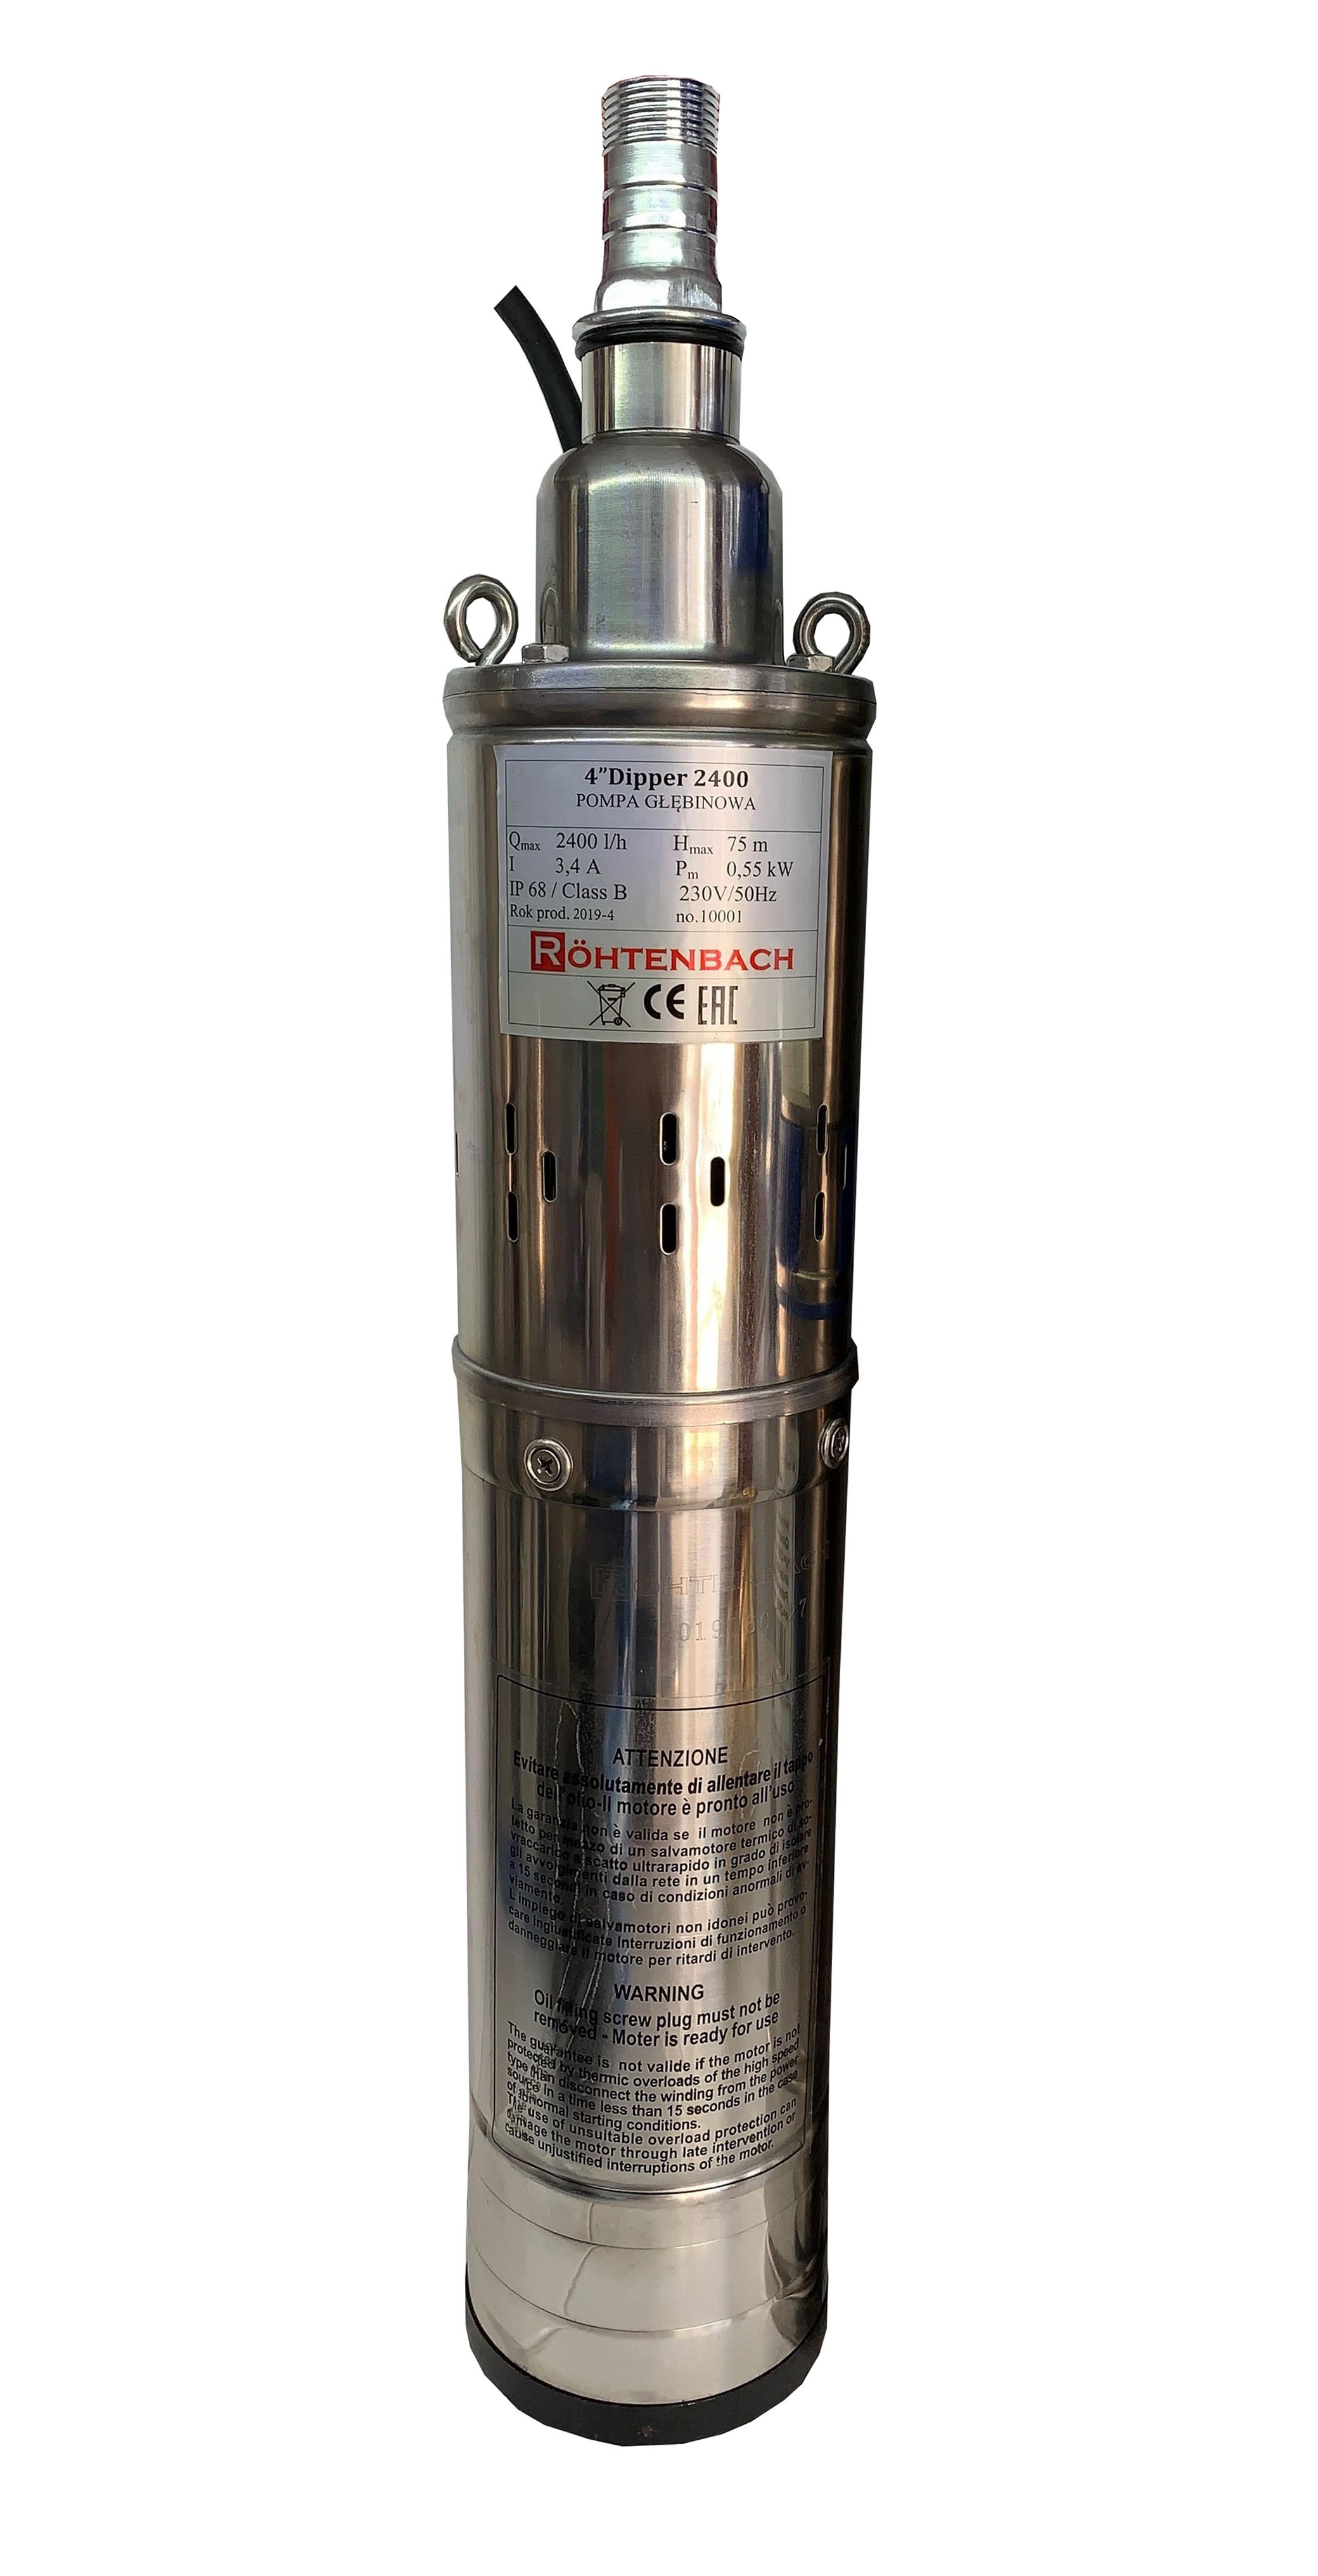 Pompa Submersibila QGD Rohtenbach Dipper 2400